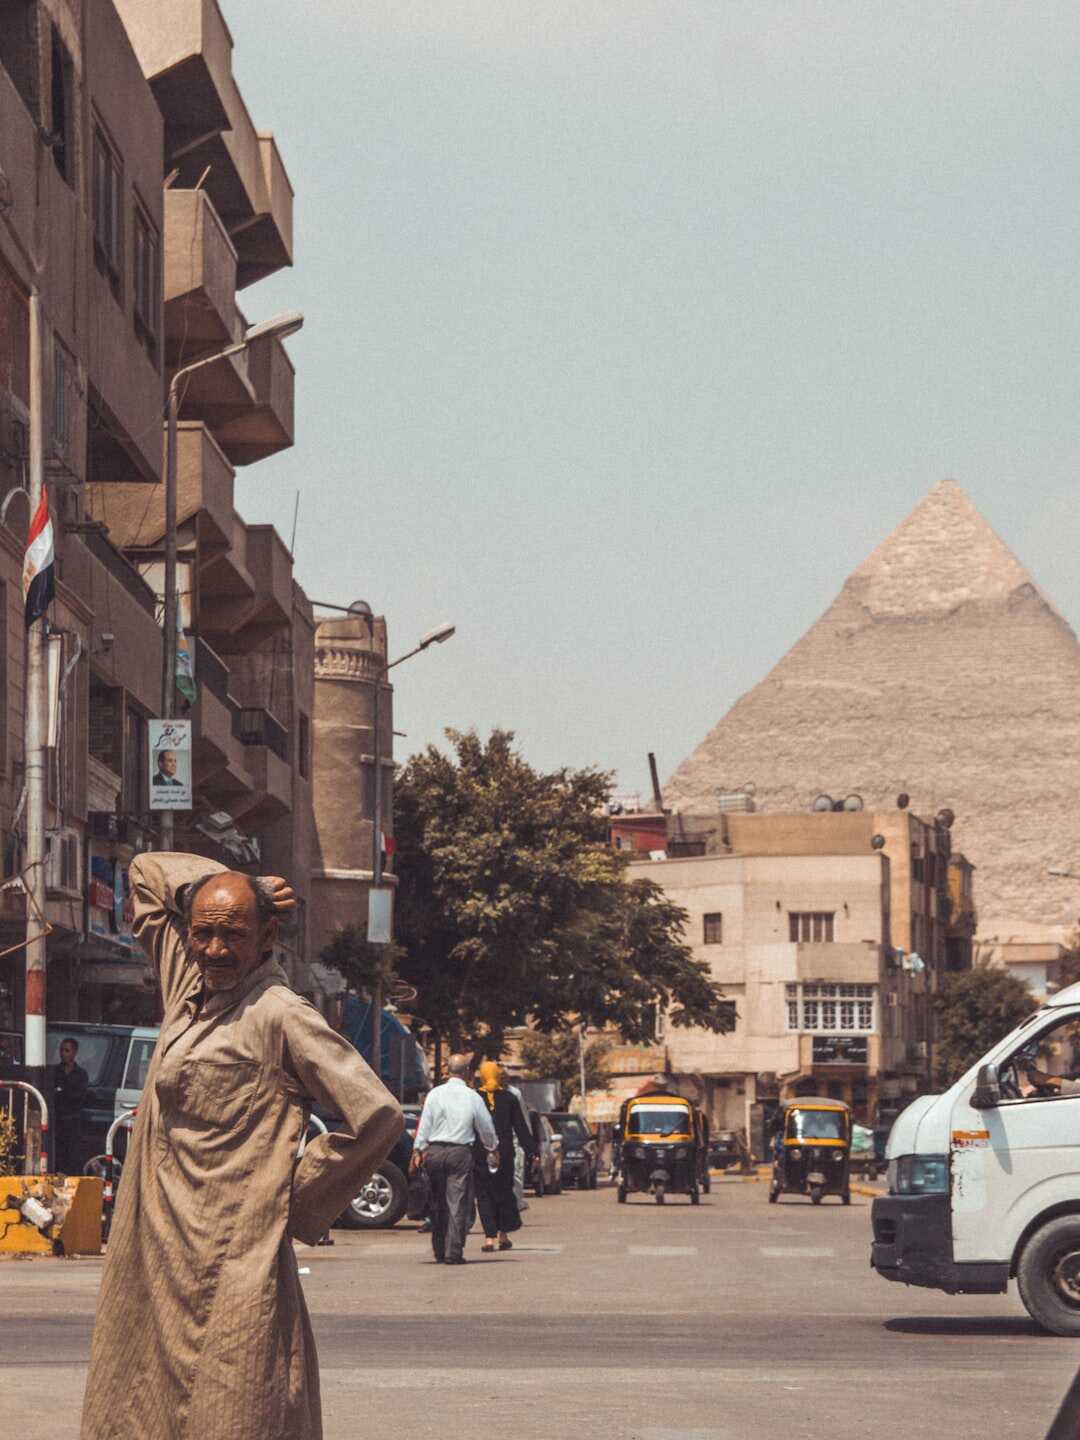 Découvrez l'Egypte, un pays fascinant plein de mystères et de wonders!